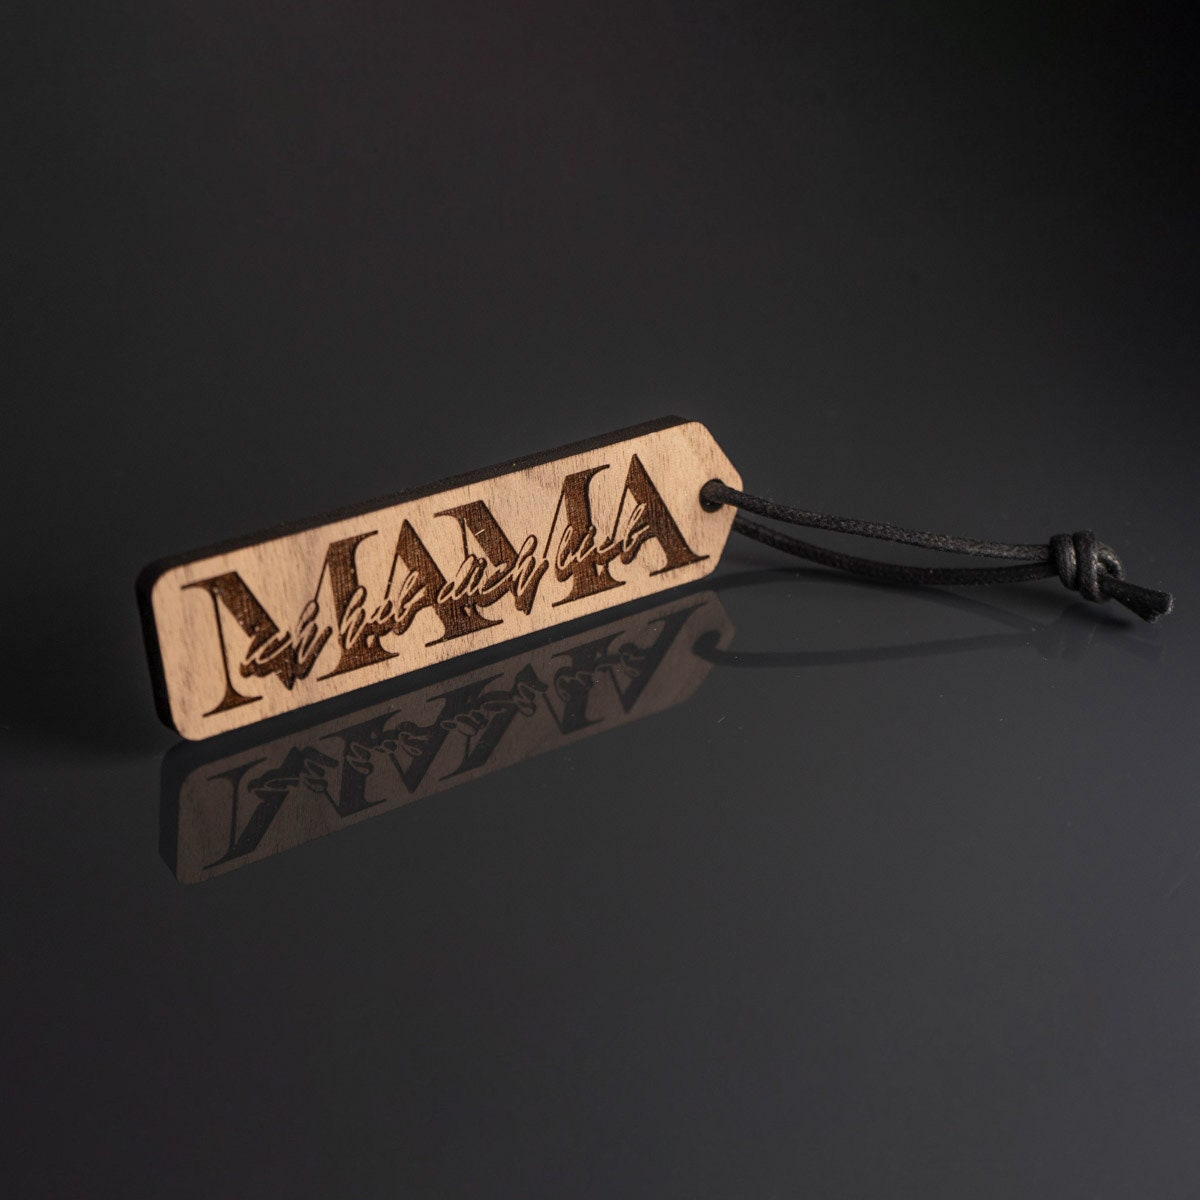 Schlüsselanhänger "Mama ich hab dich lieb" aus Holz